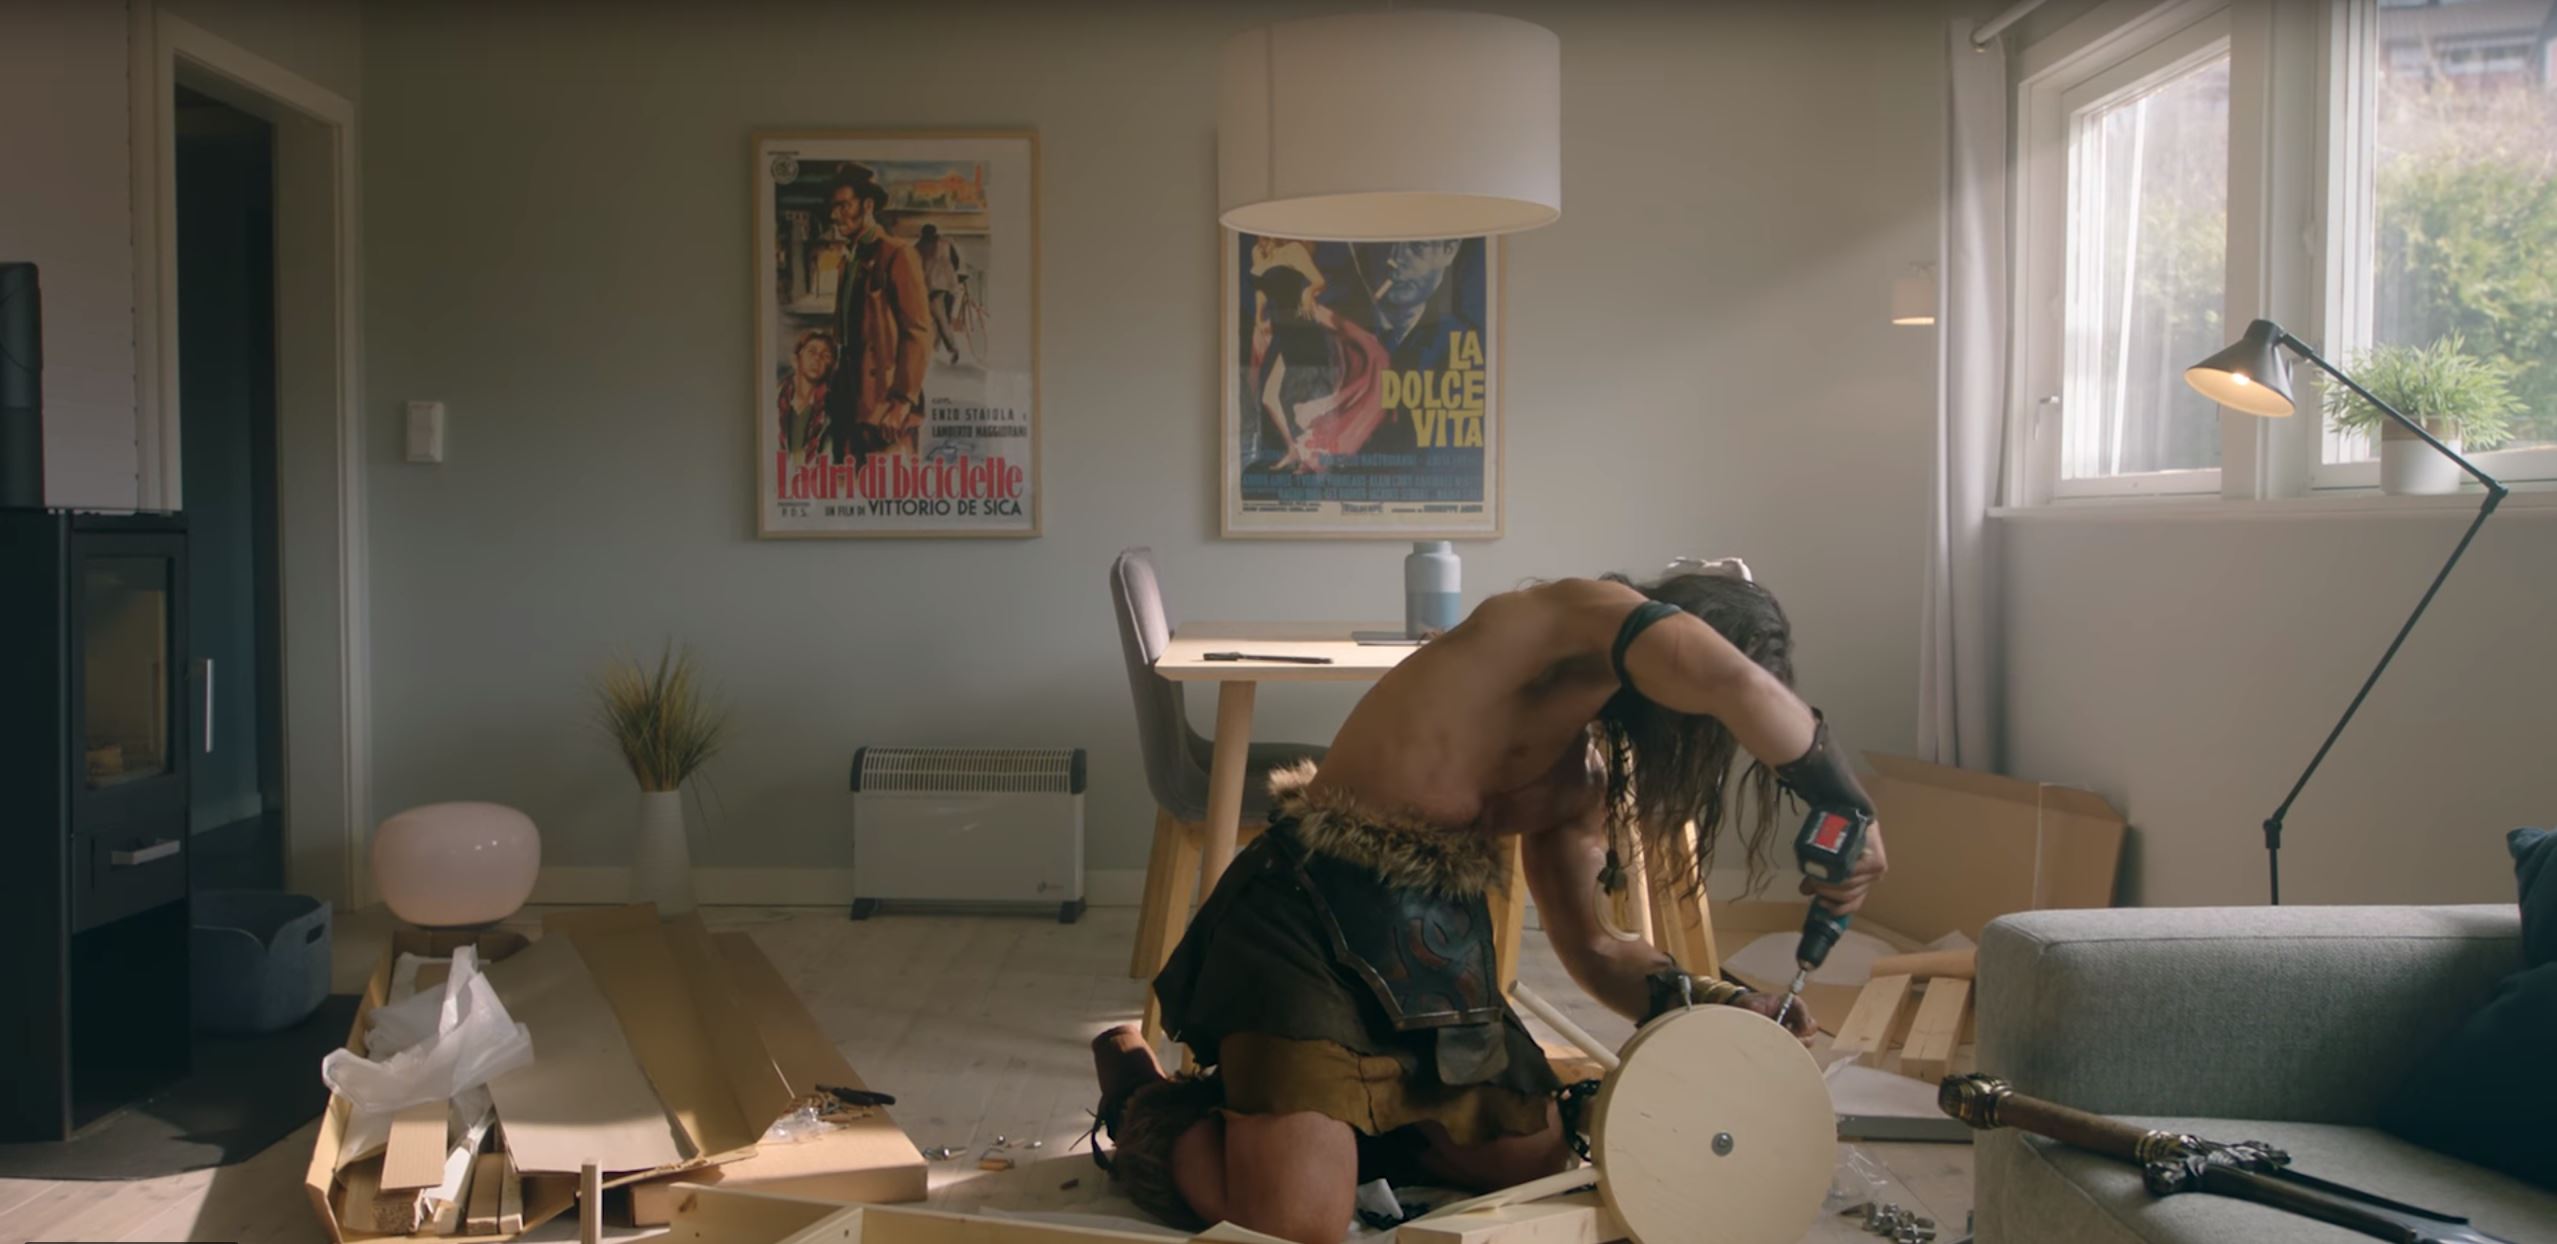 Conan Exiles: Trailer zeigt Barbaren im Kampf mit Ikea und Staubsaugern